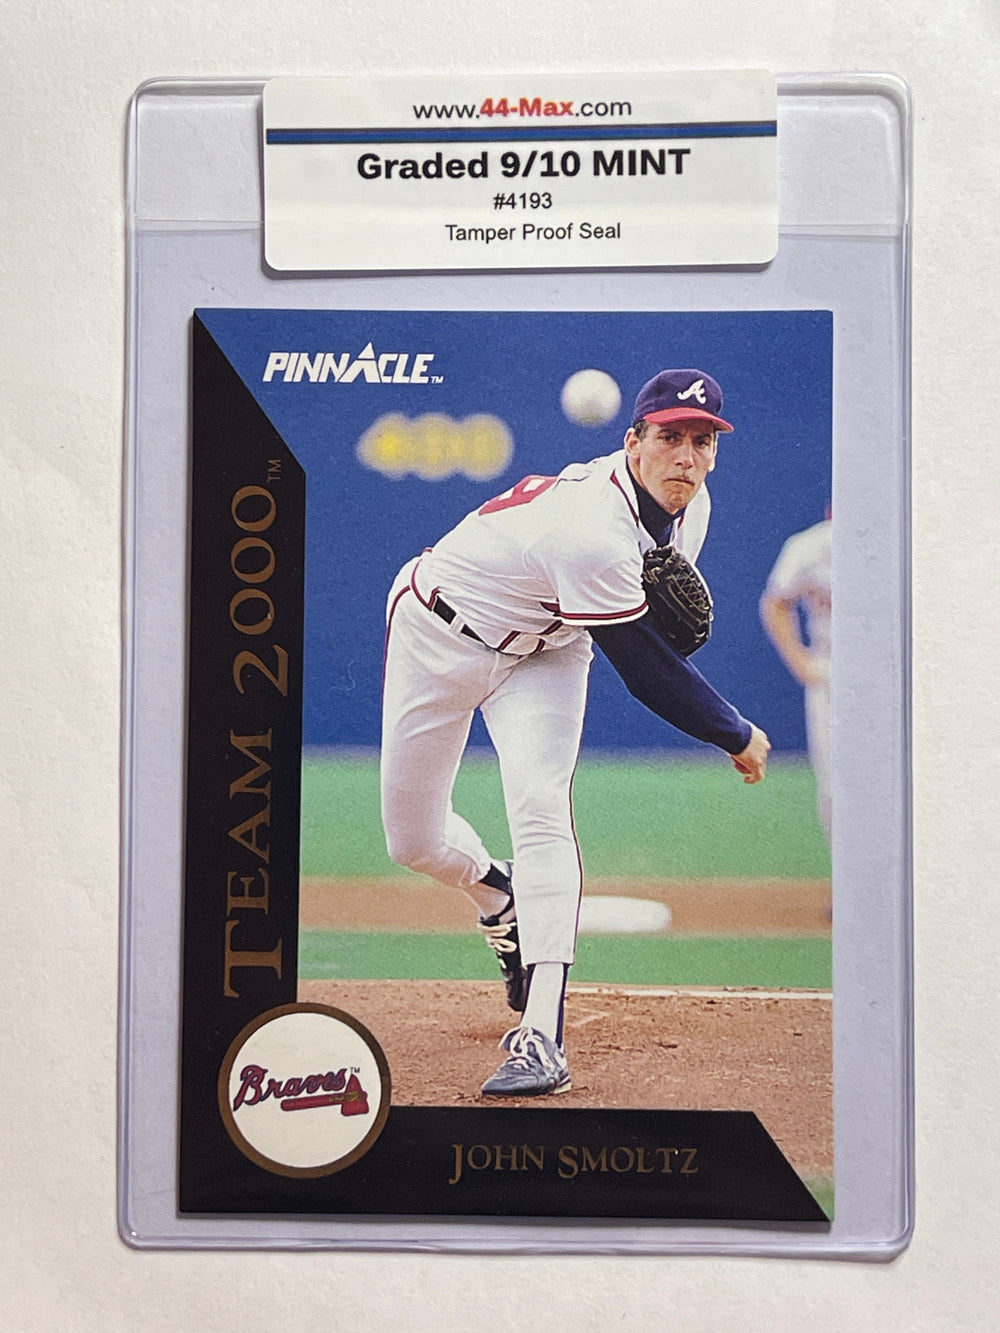 John Smoltz Team 2000 1992 Pinnacle Baseball Card. 44-Max 9/10 Mint #4193